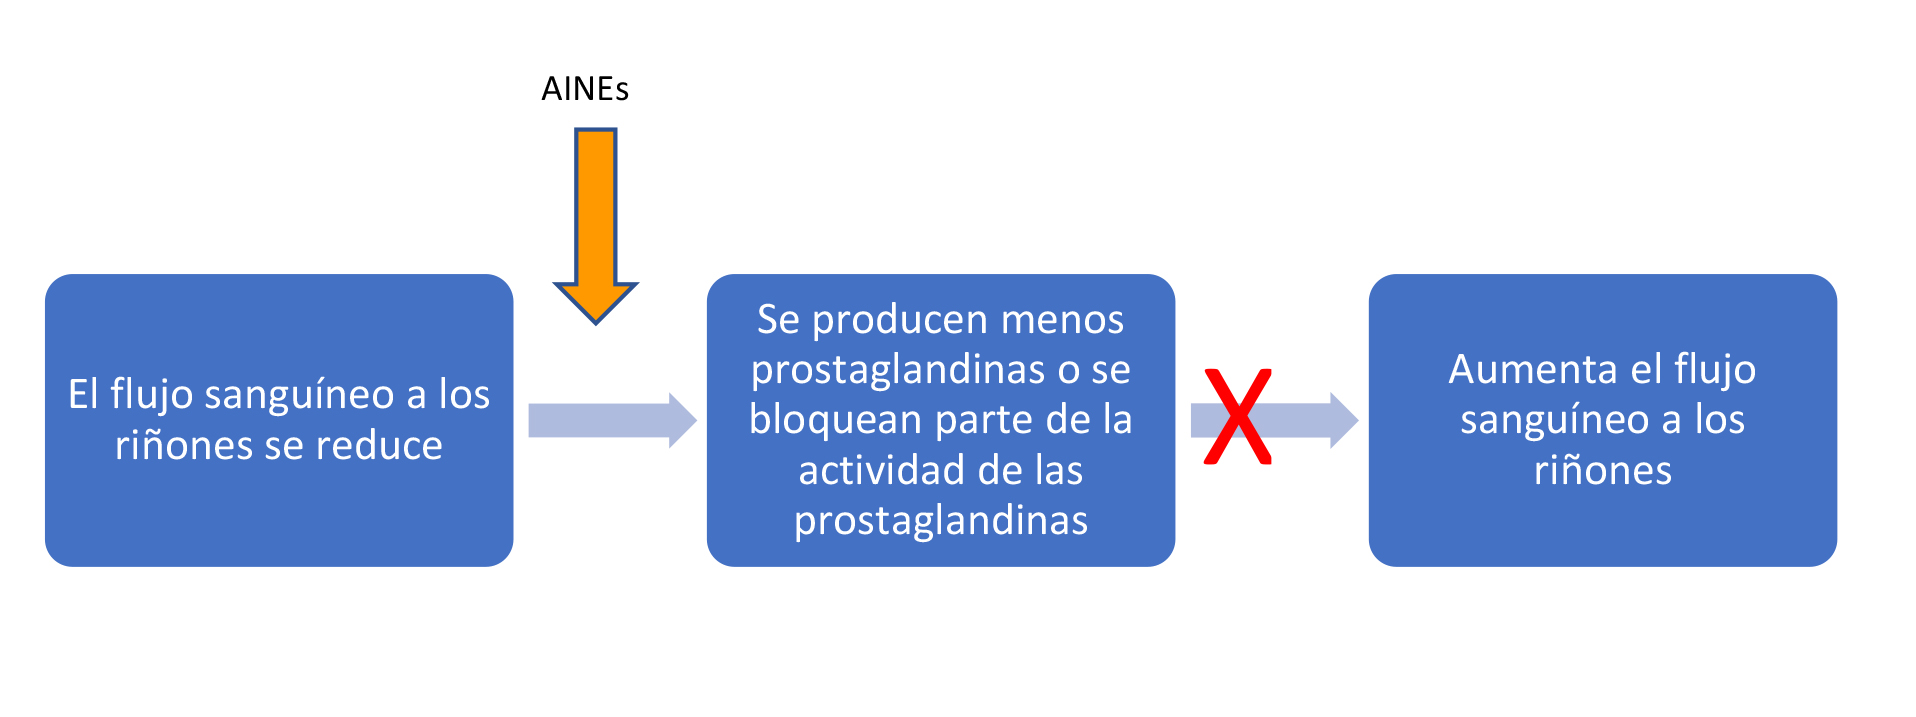 Esquema mostrando como los AINEs pueden reducir el flujo sanguíneo a los riñones. El flujo sanguíneo a los riñones se reduce -> Los AINEs causan que se produzcan menos prostaglandinas o que se bloqueen algunas de sus funciones -> El flujo sanguíneo a los riñones NO aumenta. 